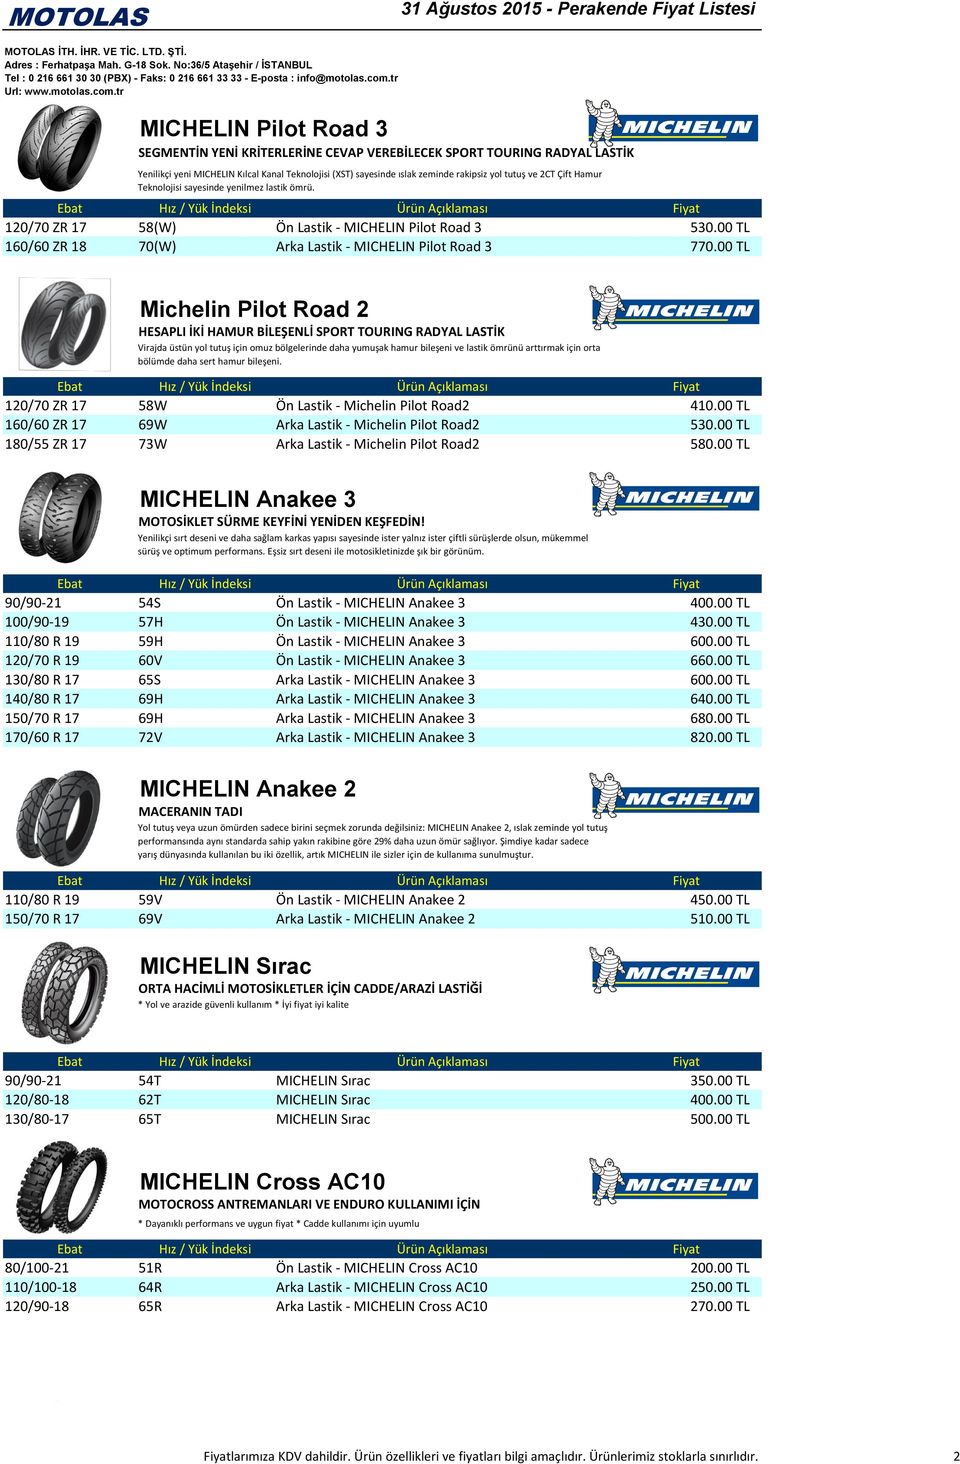 00 TL Michelin Pilot Road 2 HESAPLI İKİ HAMUR BİLEŞENLİ SPORT TOURING RADYAL LASTİK Virajda üstün yol tutuş için omuz bölgelerinde daha yumuşak hamur bileşeni ve lastik ömrünü arttırmak için orta